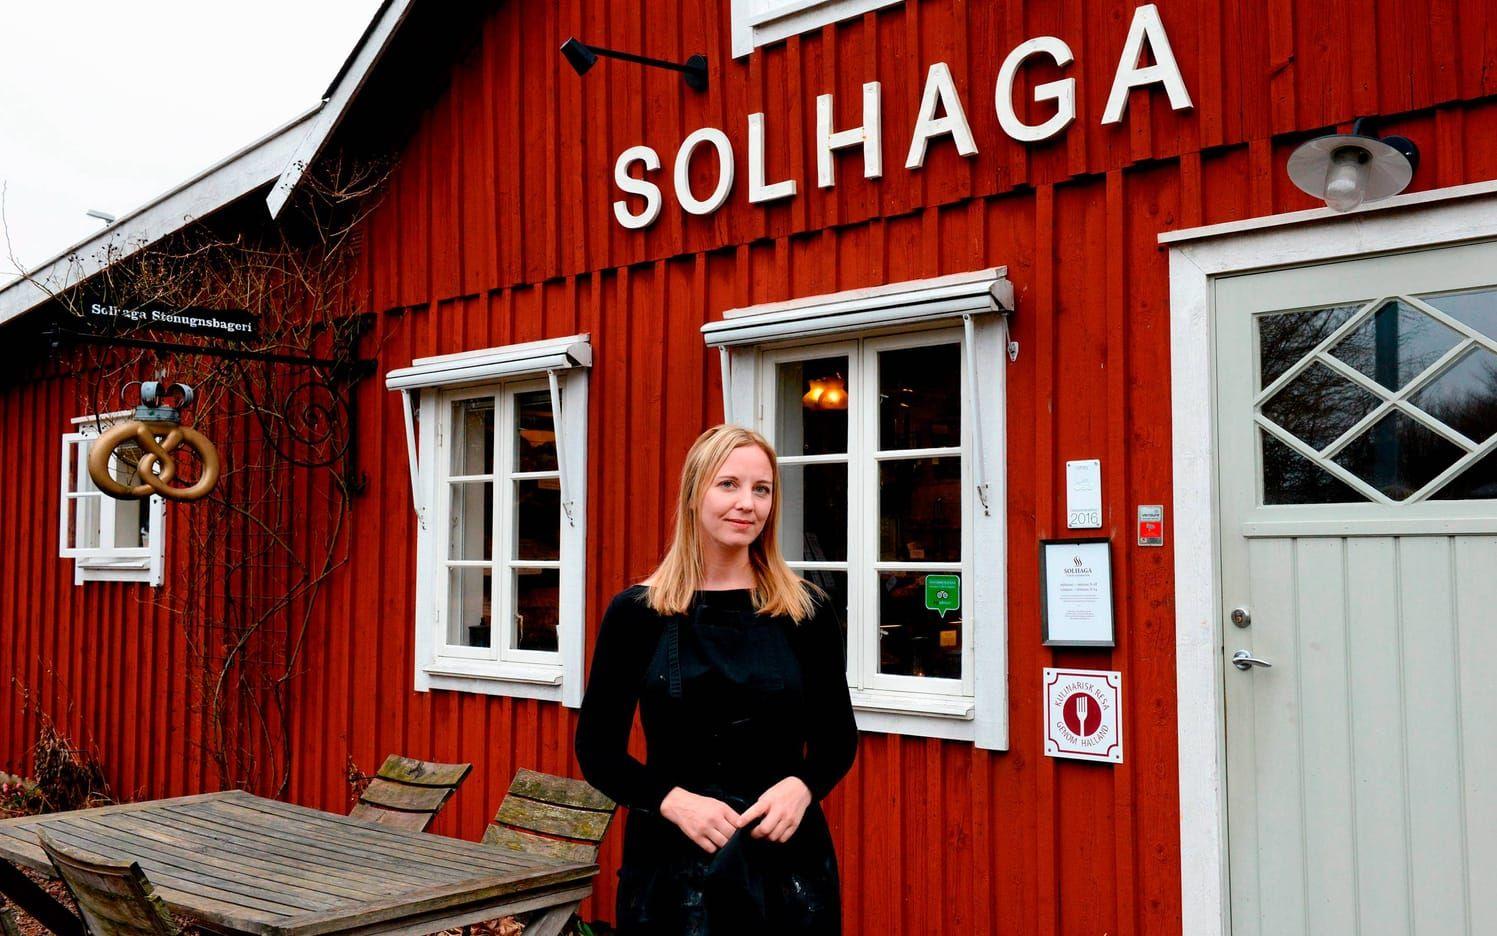 Sex år sen starten. Det var år 2011 som Solhaga Stenugnsbageri öppnades i uthuset i Slöinge.